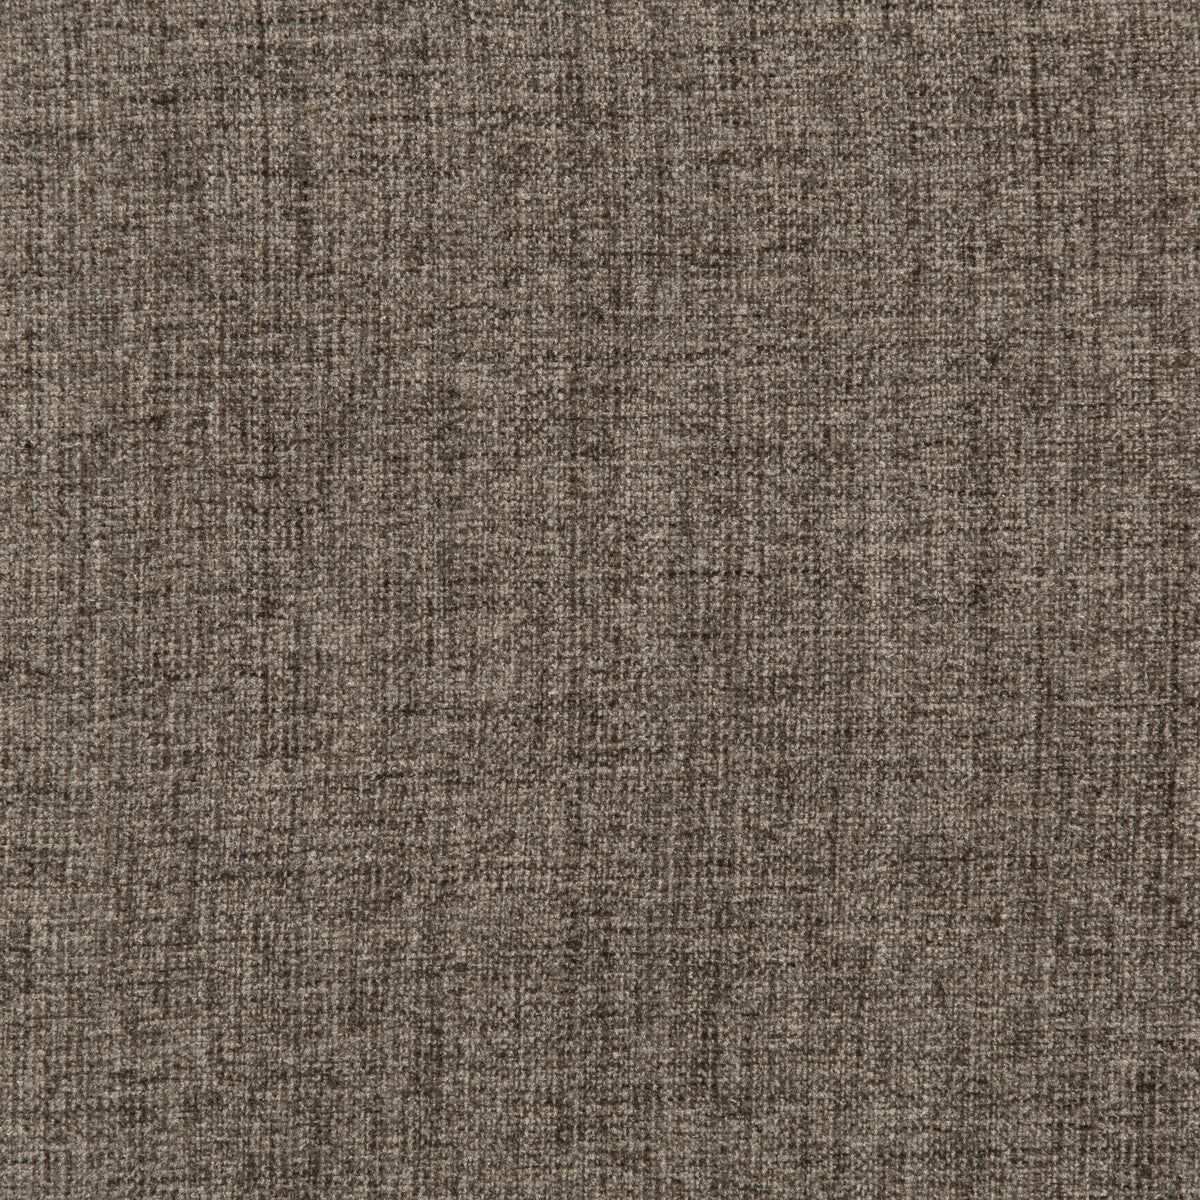 Kravet Basics fabric in 35775-21 color - pattern 35775.21.0 - by Kravet Basics